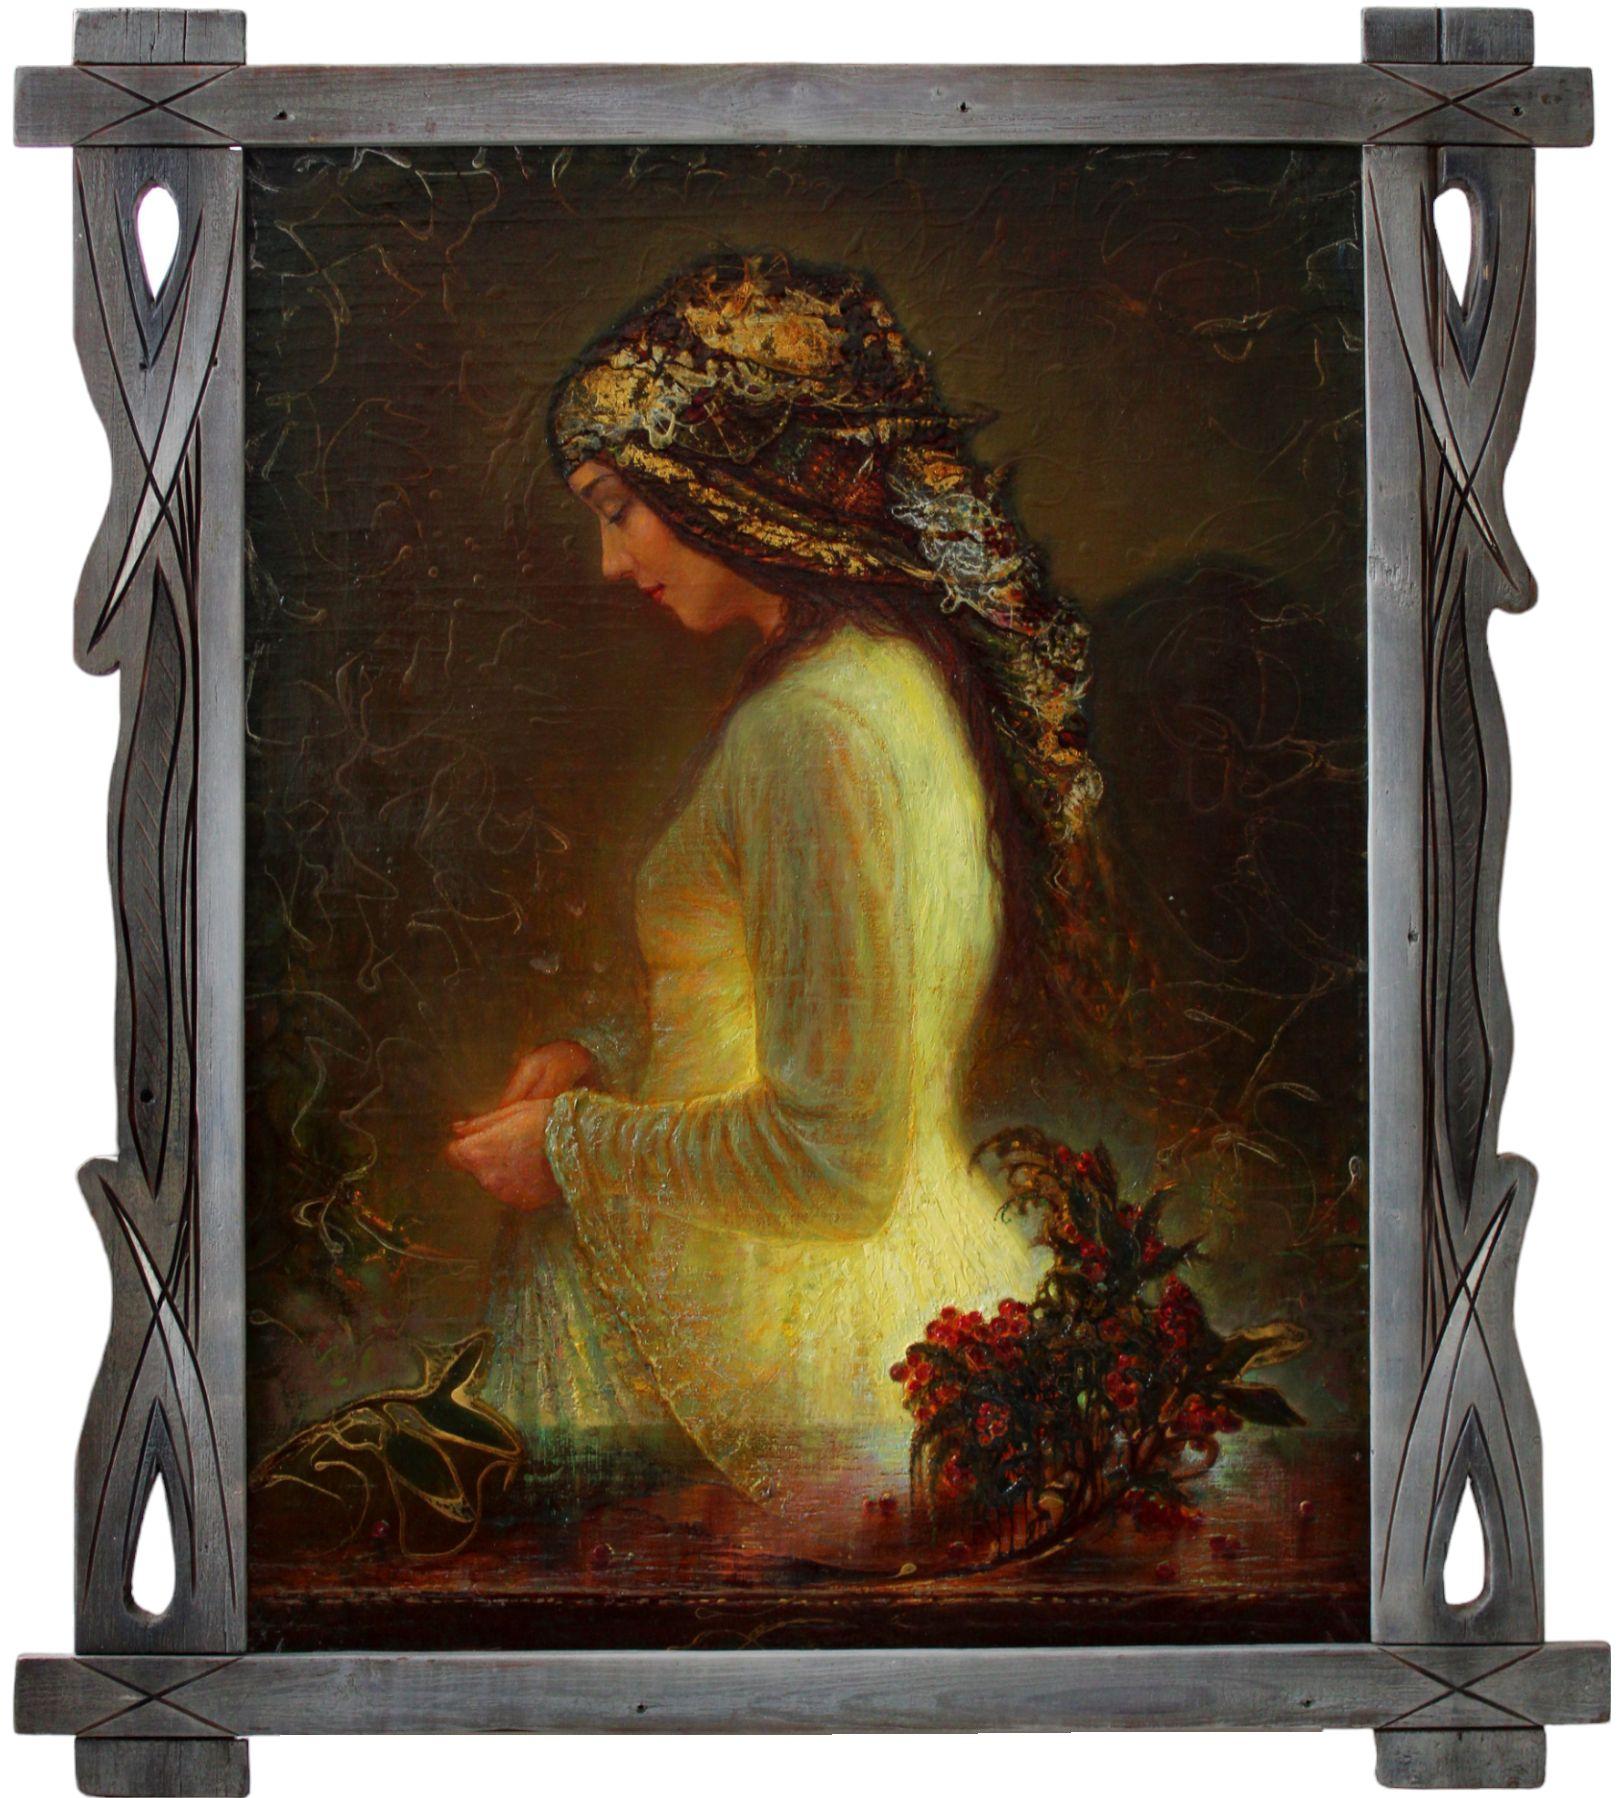 A light sensation. 2008, cardboard, oil, 60x84 cm - Painting by Igor Maikov